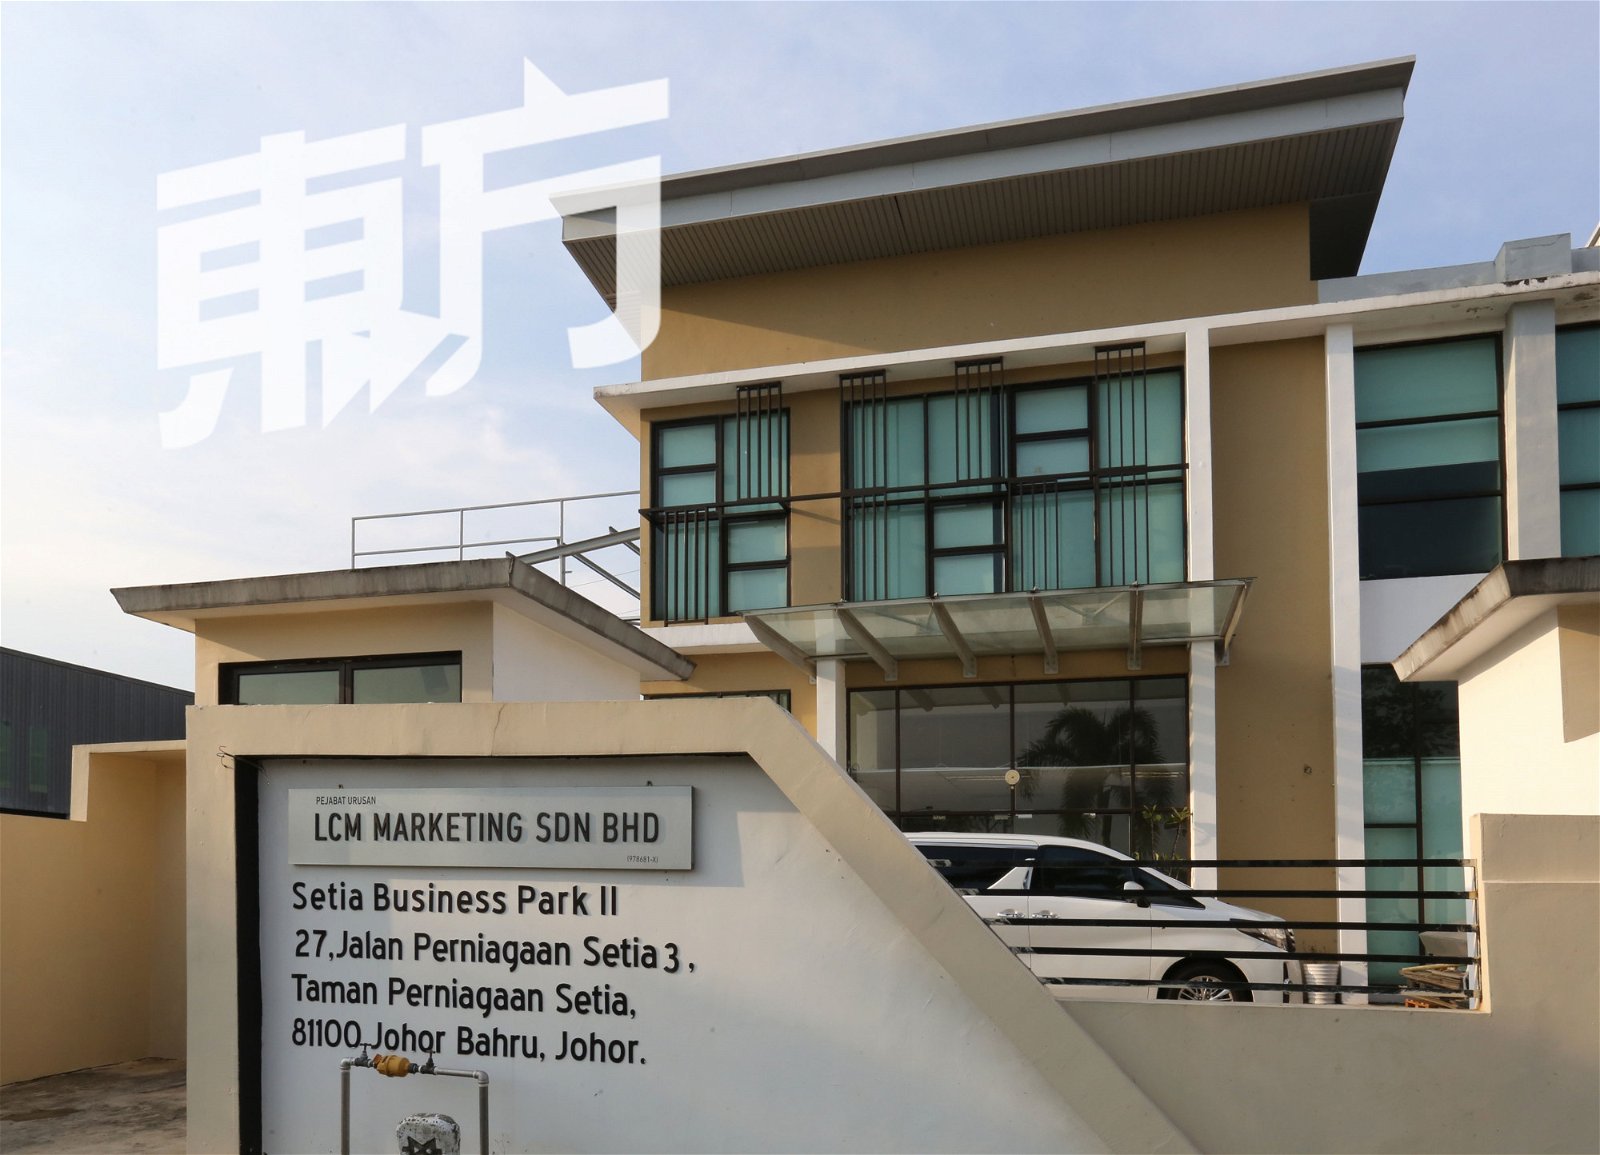 张畯翔获得3万令吉创业金开始文具代理的道路，创立LCM Marketing有限公司。